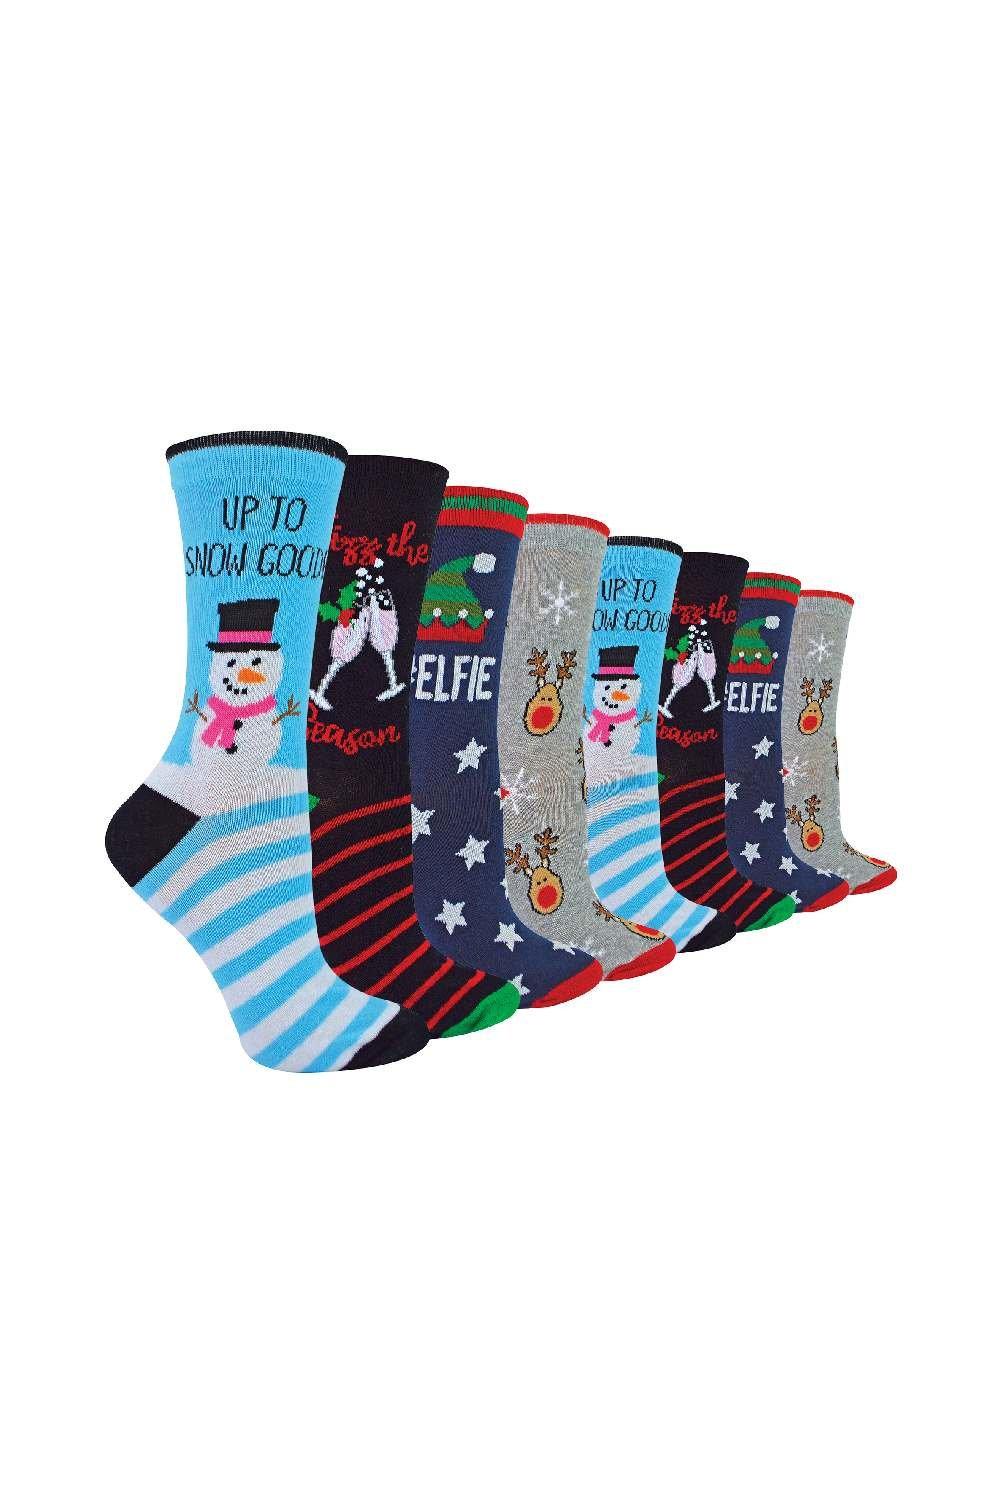 8 Pair Multipack Christmas Socks - Funny Design Gift Socks